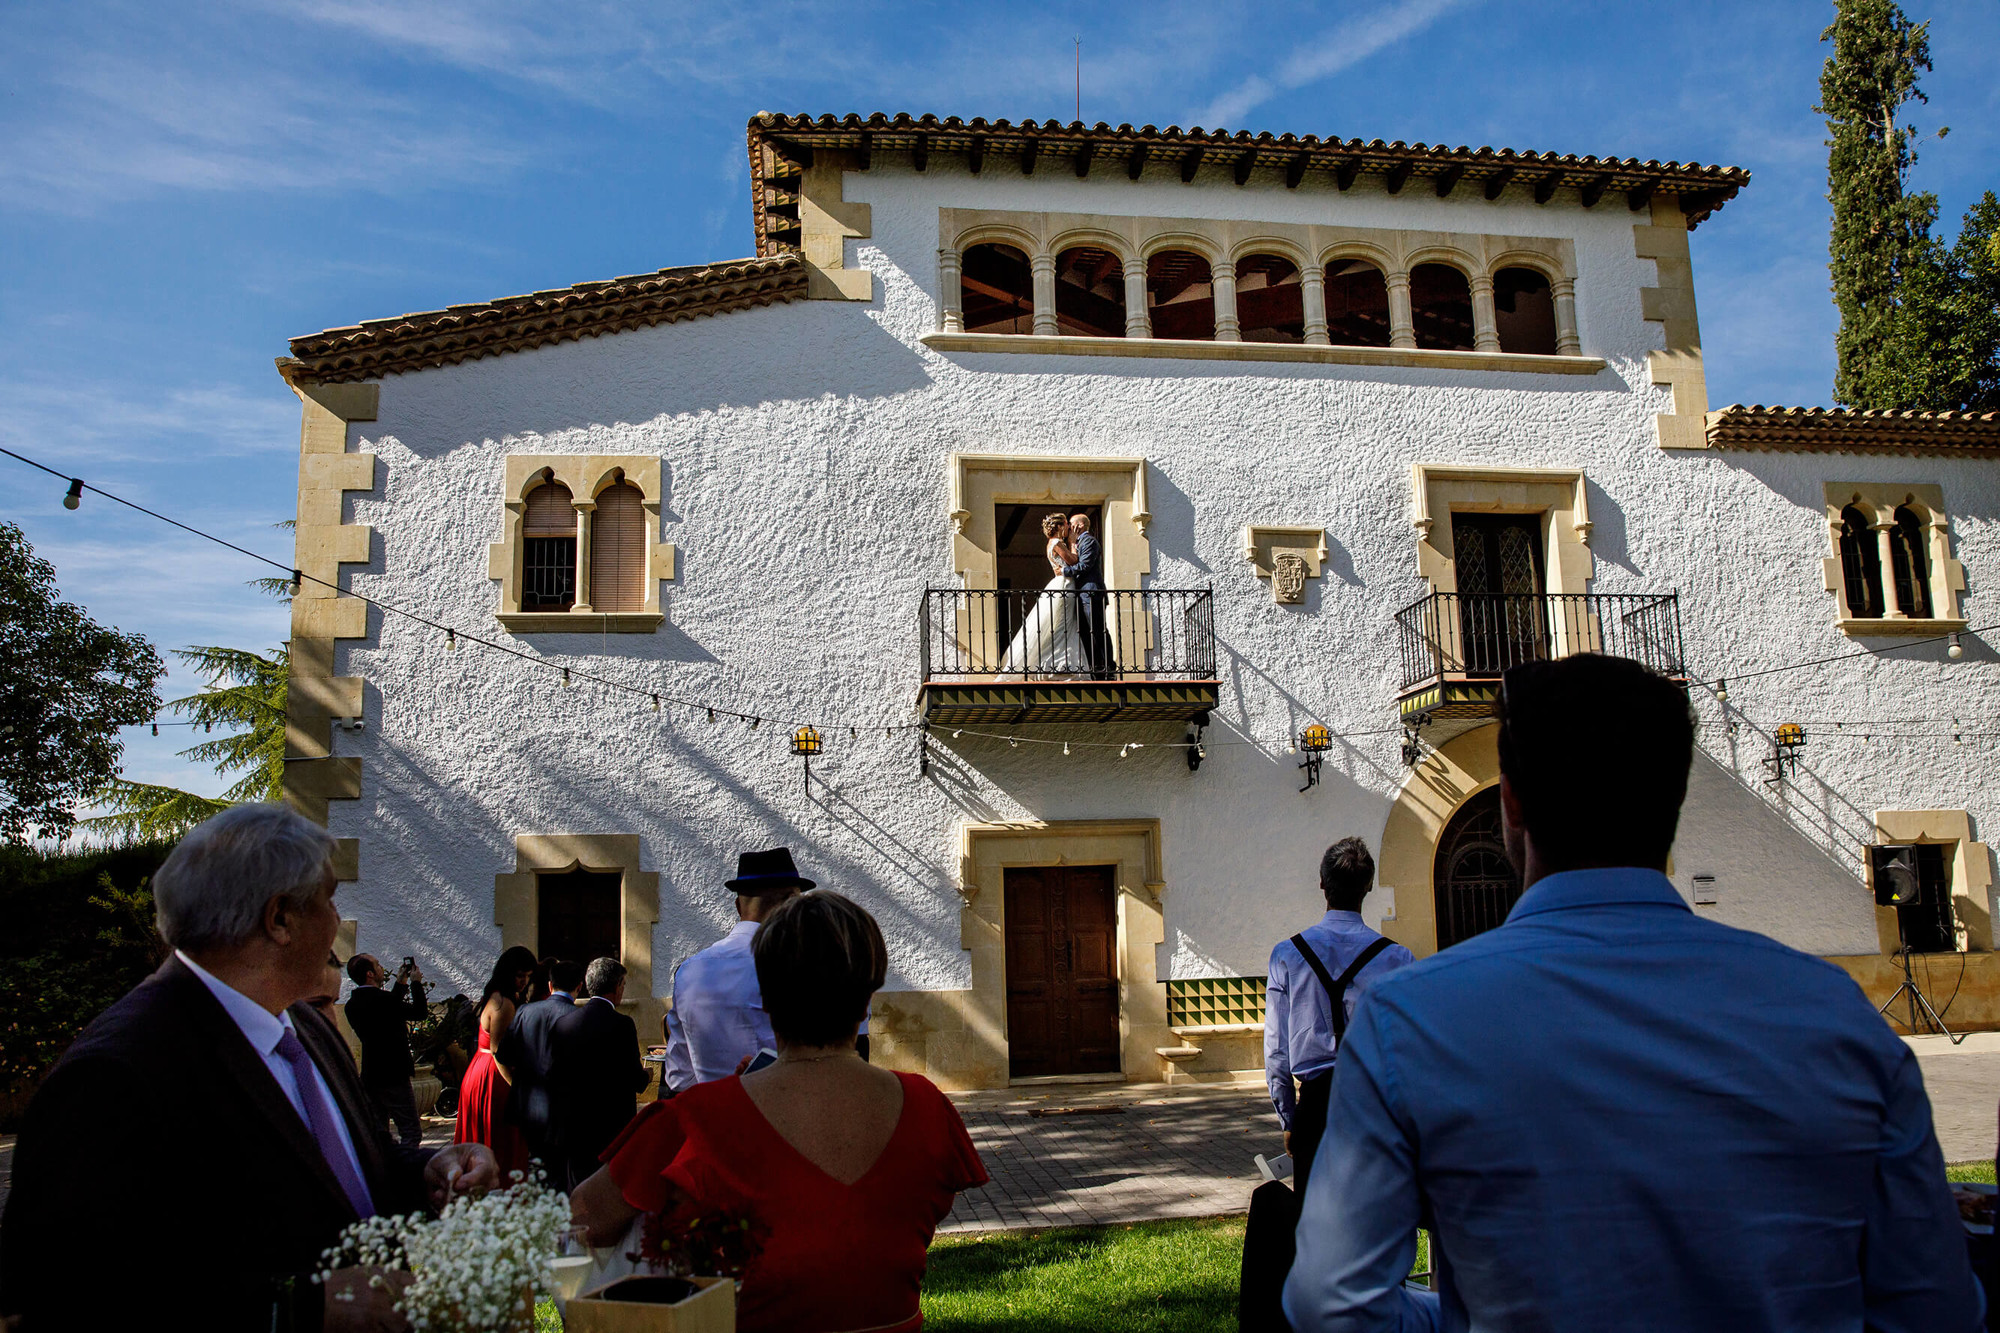 Els nuvis al balcó de la façana després del casament a Masia Torreblanca.